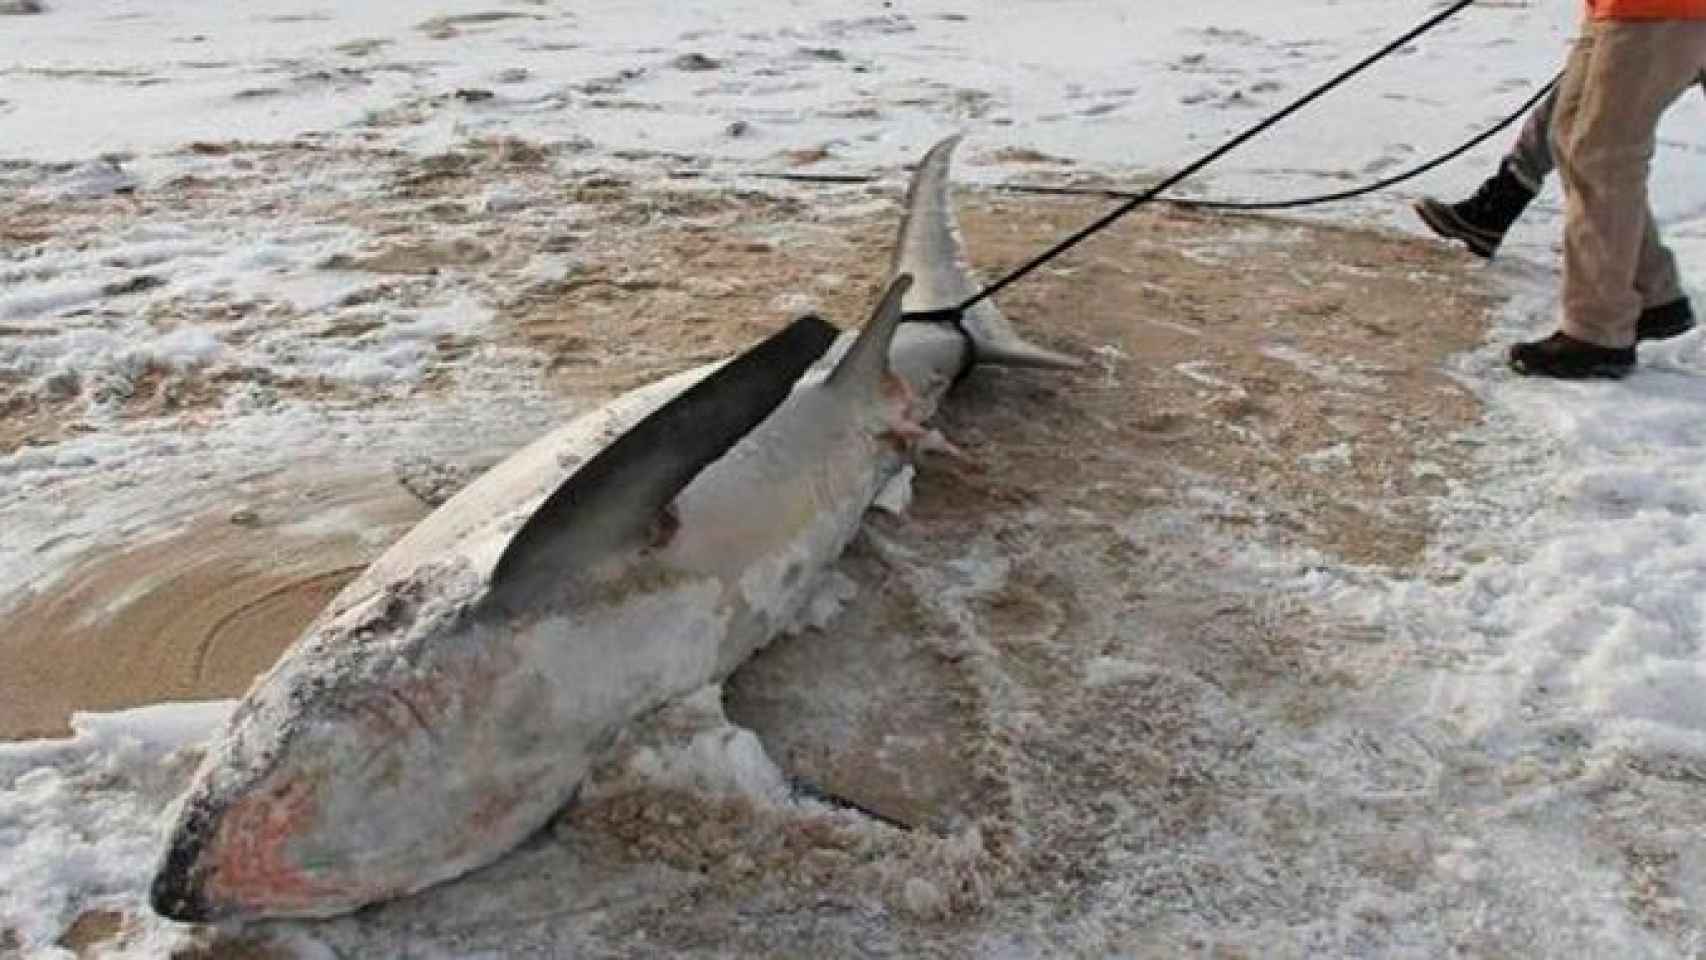 Uno de los tiburones congelados que se encontraron en la costa de Massachusetts, en Estados Unidos / Twitter